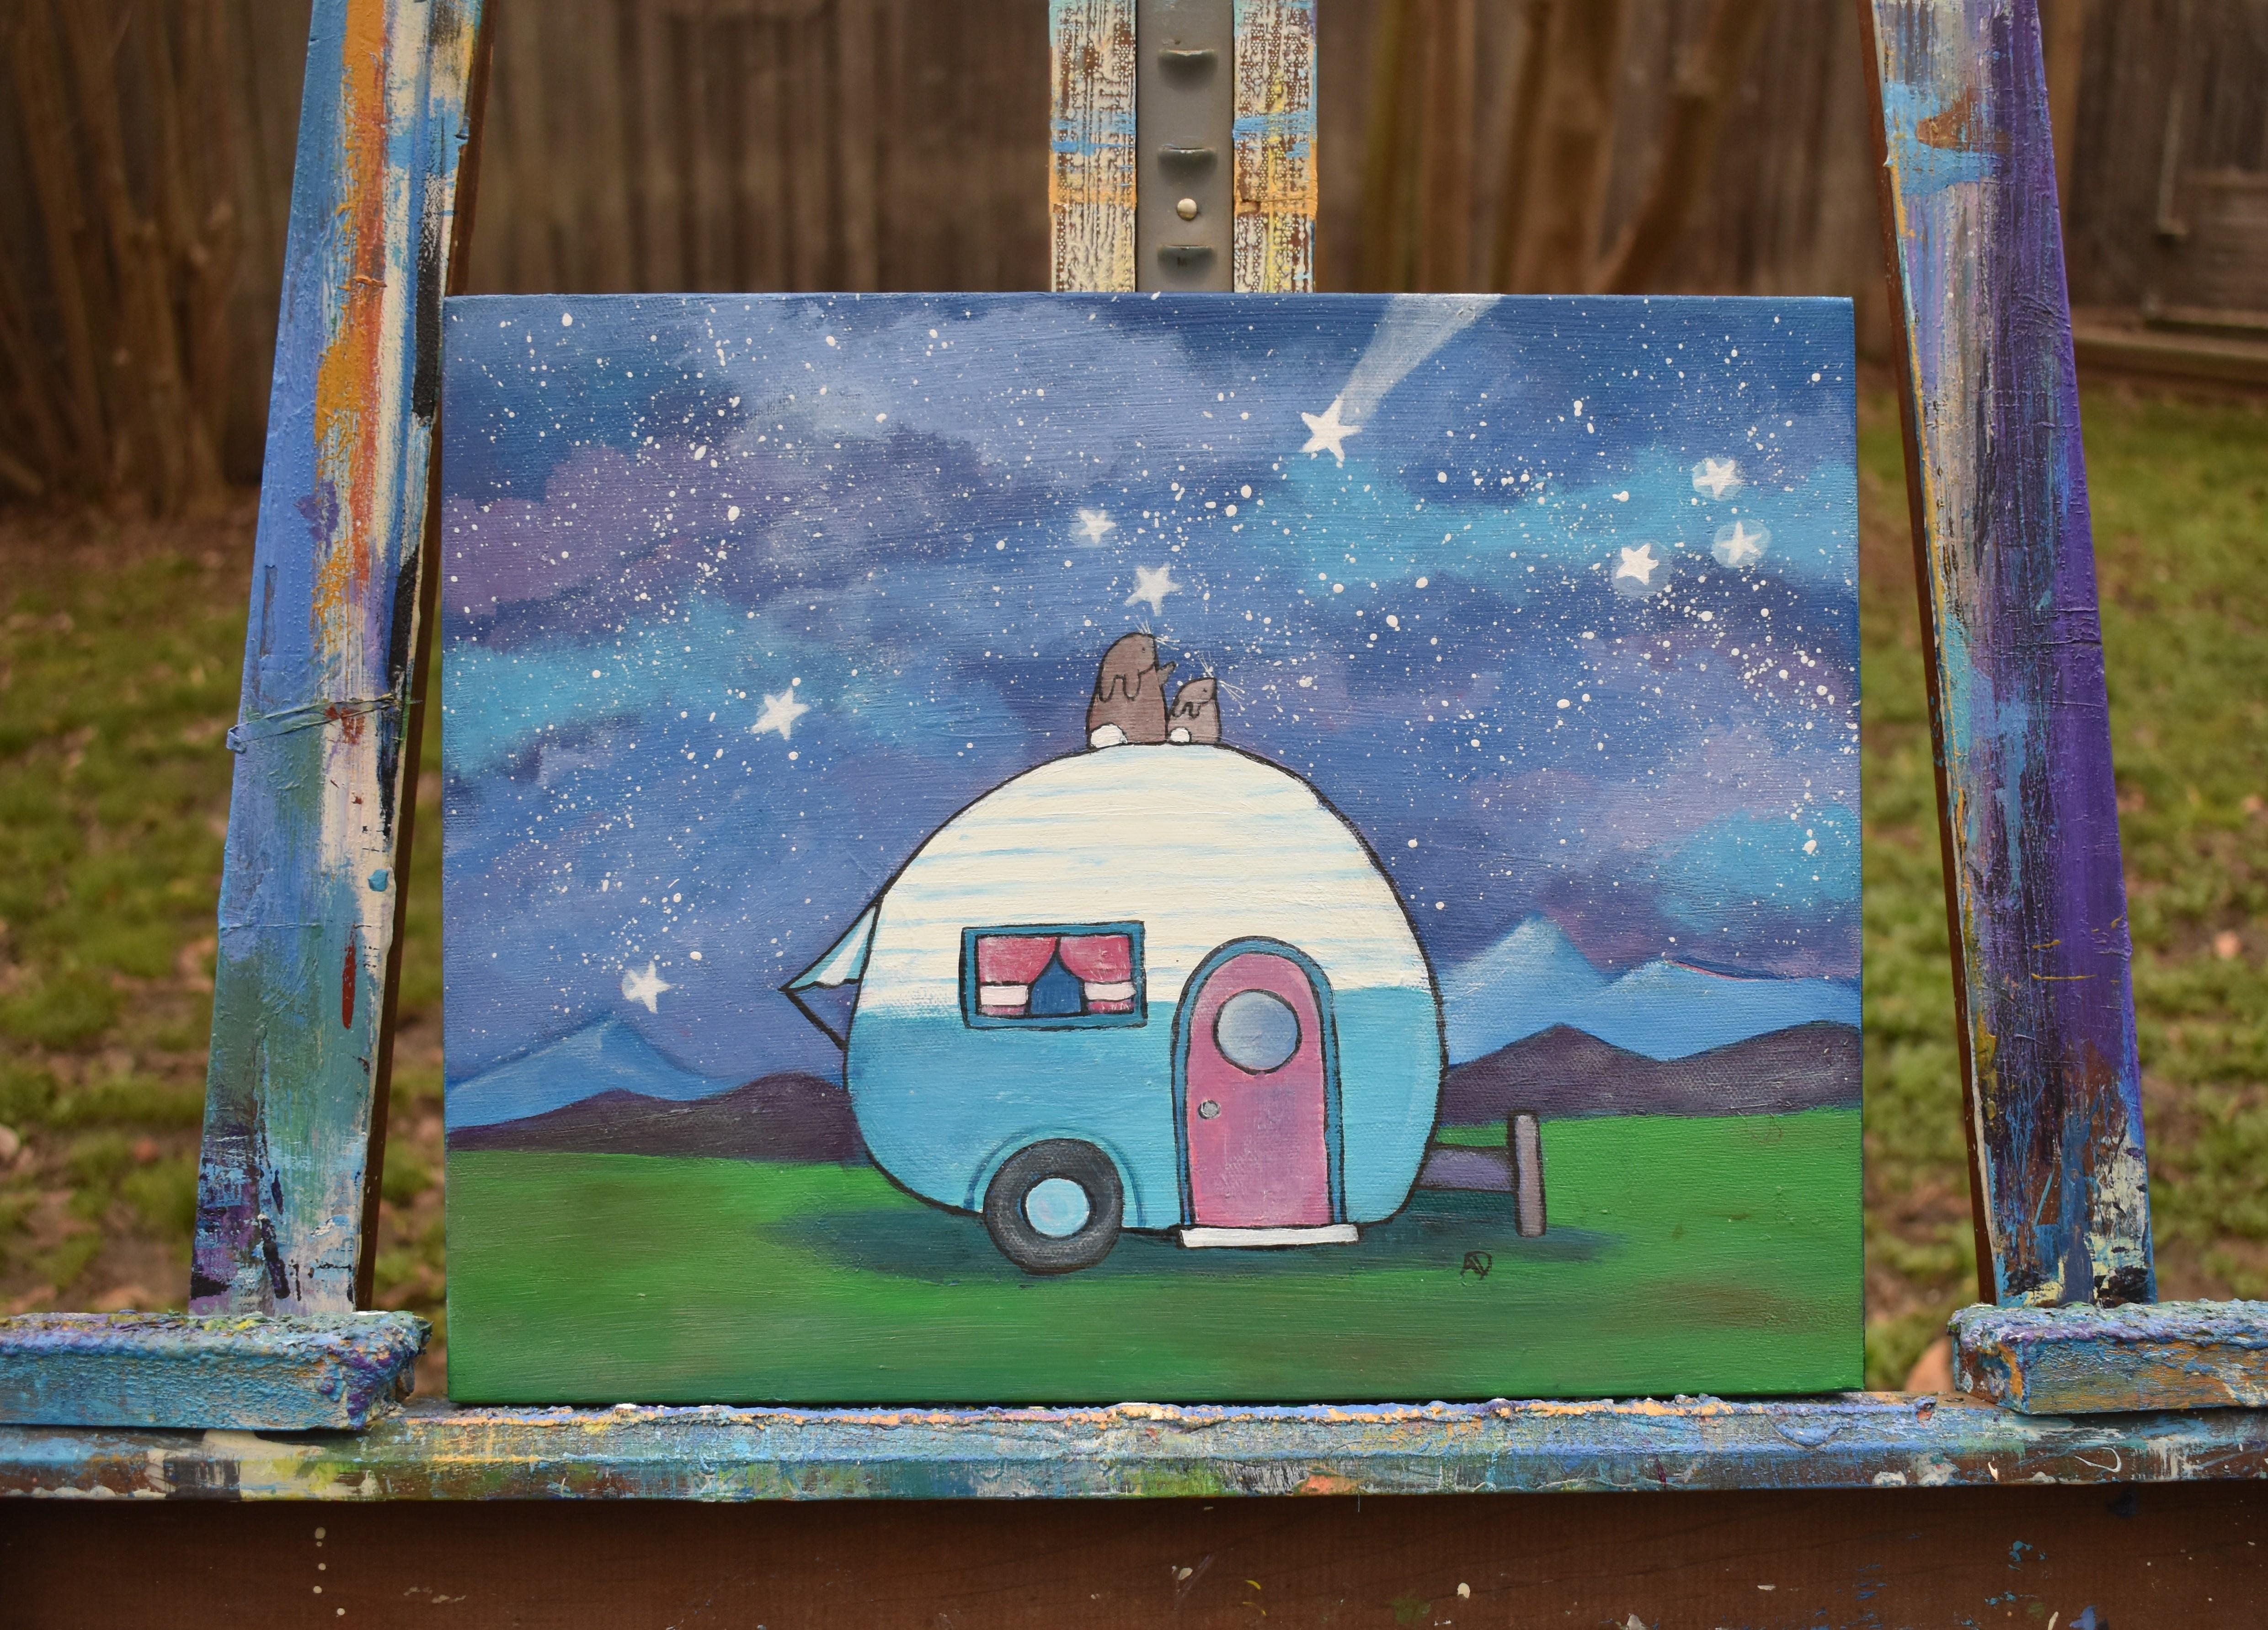 <p>Kommentare des Künstlers<br>Zwei kleine Häschen sitzen in dem skurrilen Werk der Künstlerin Andrea Doss und beobachten den Himmel, zählen Sternenwünsche und diskutieren über Träume. Sie finden Trost mitten im Nirgendwo, wo alles von Sternen